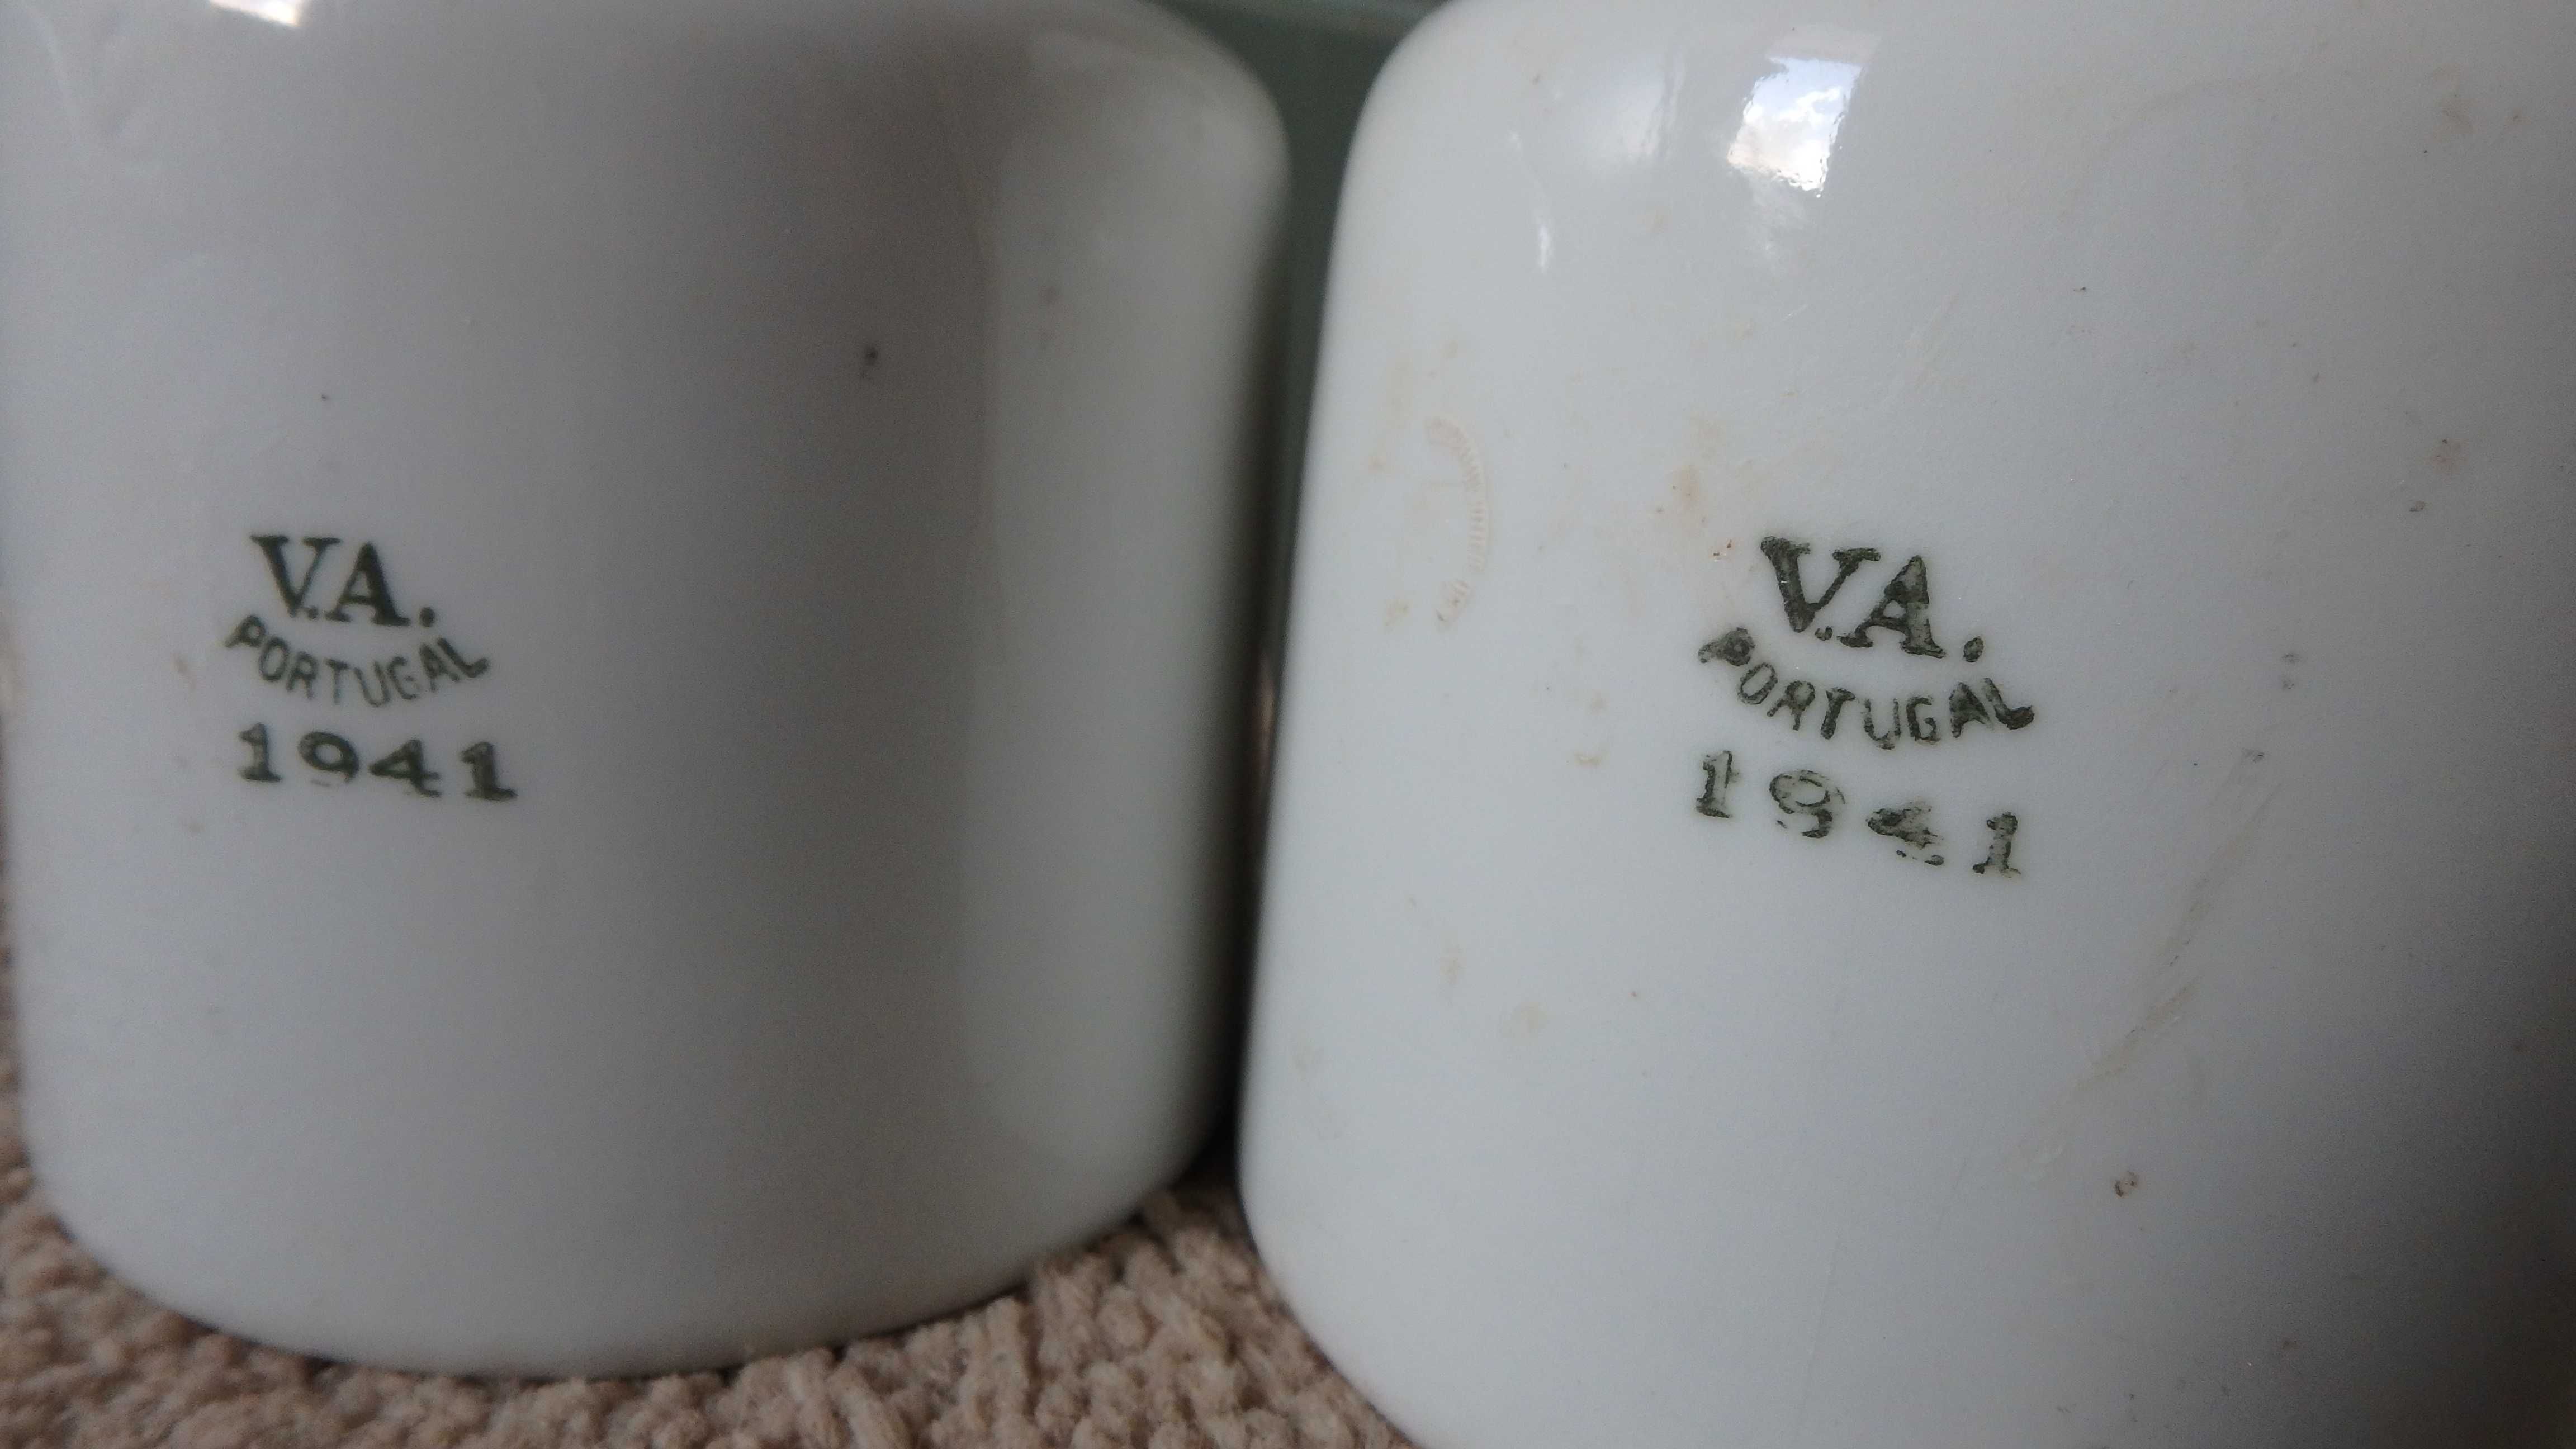 Isoladores elétricos de porcelana Vista Alegre com data de 1941